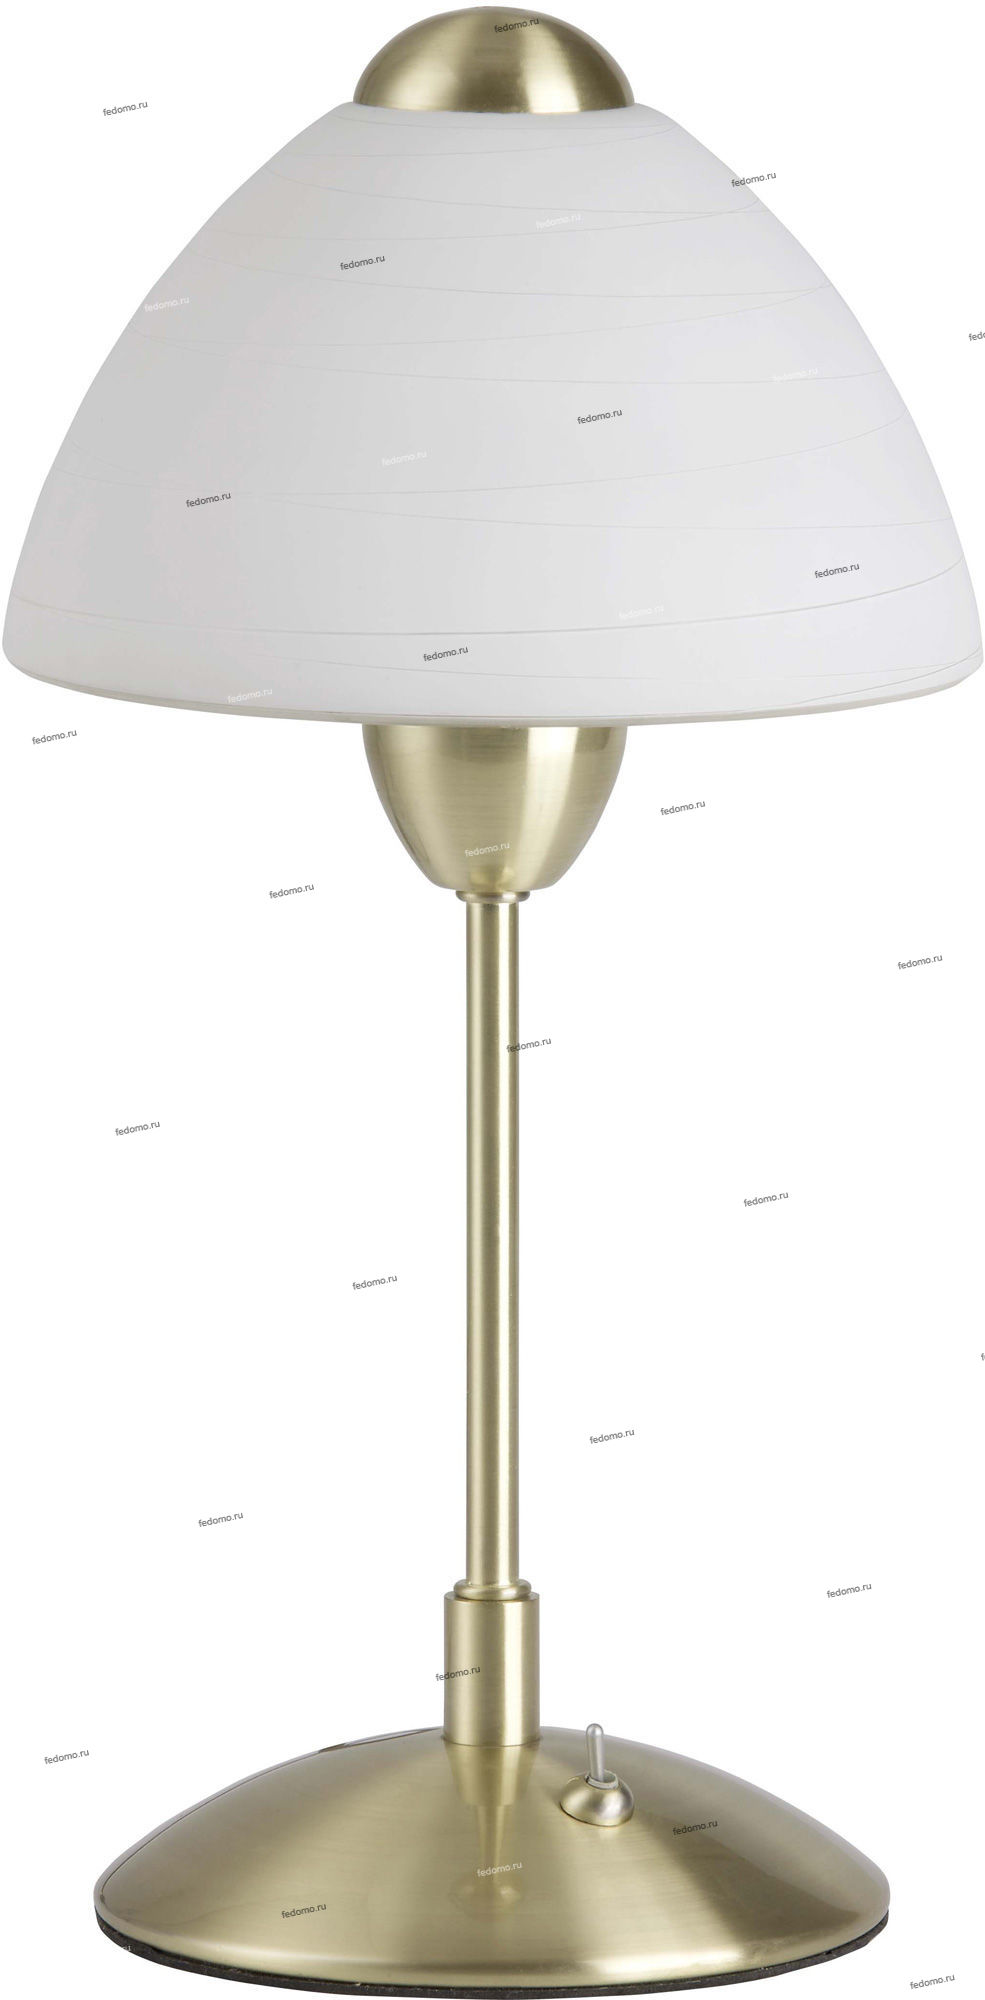 G66447/18 — Настольная лампа Brilliant Enzio, 1 плафон, латунь, белый